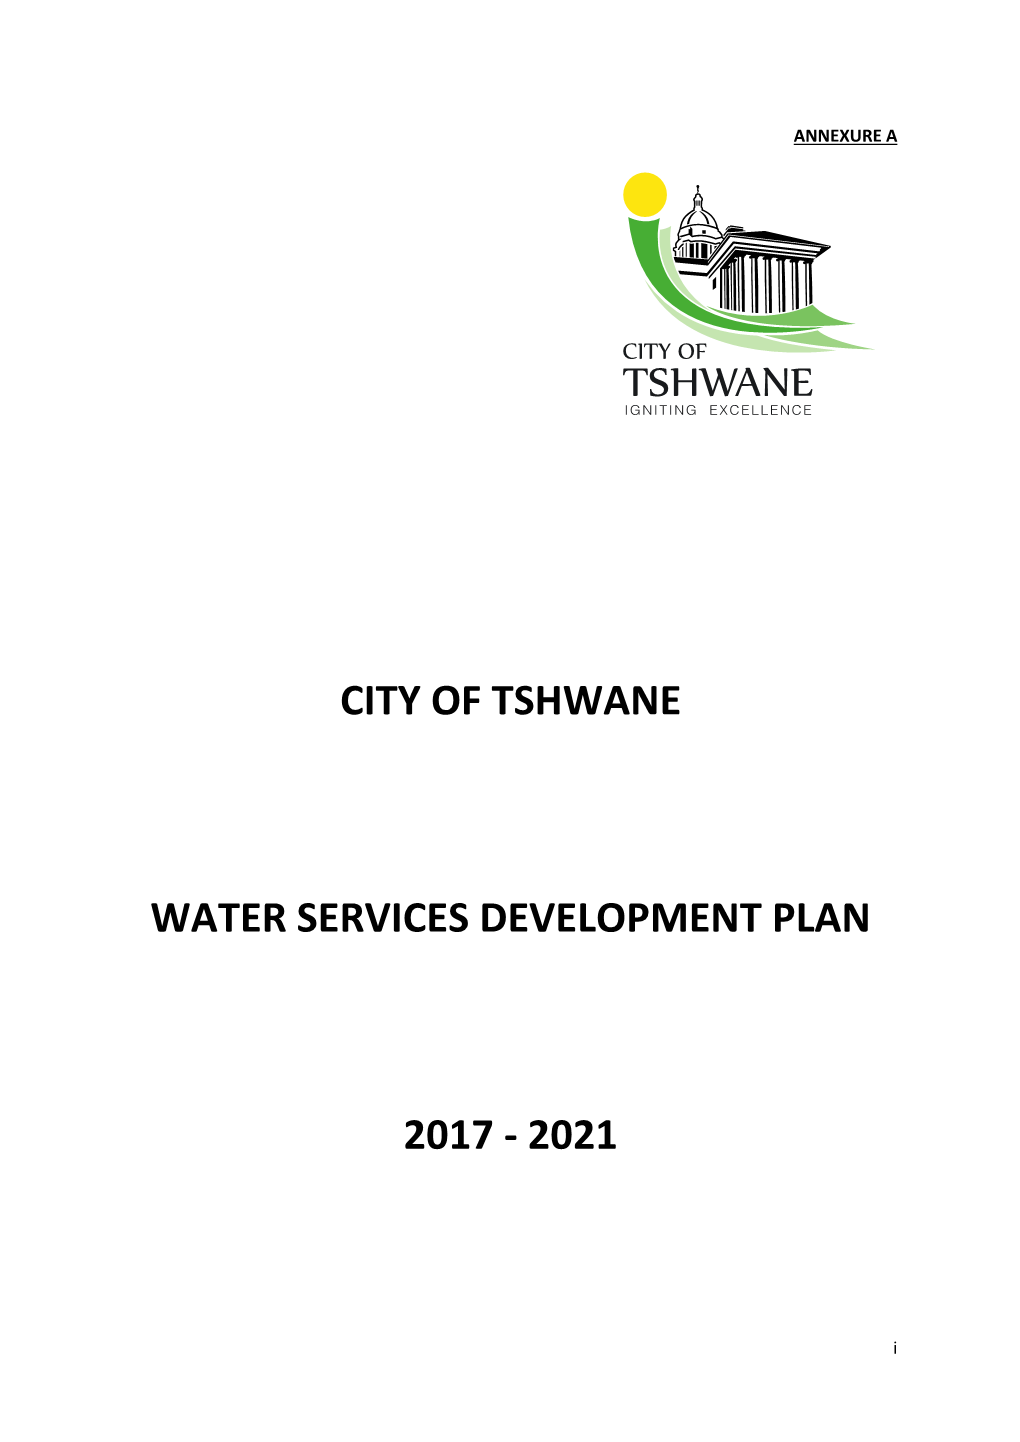 Water Services Development Plan